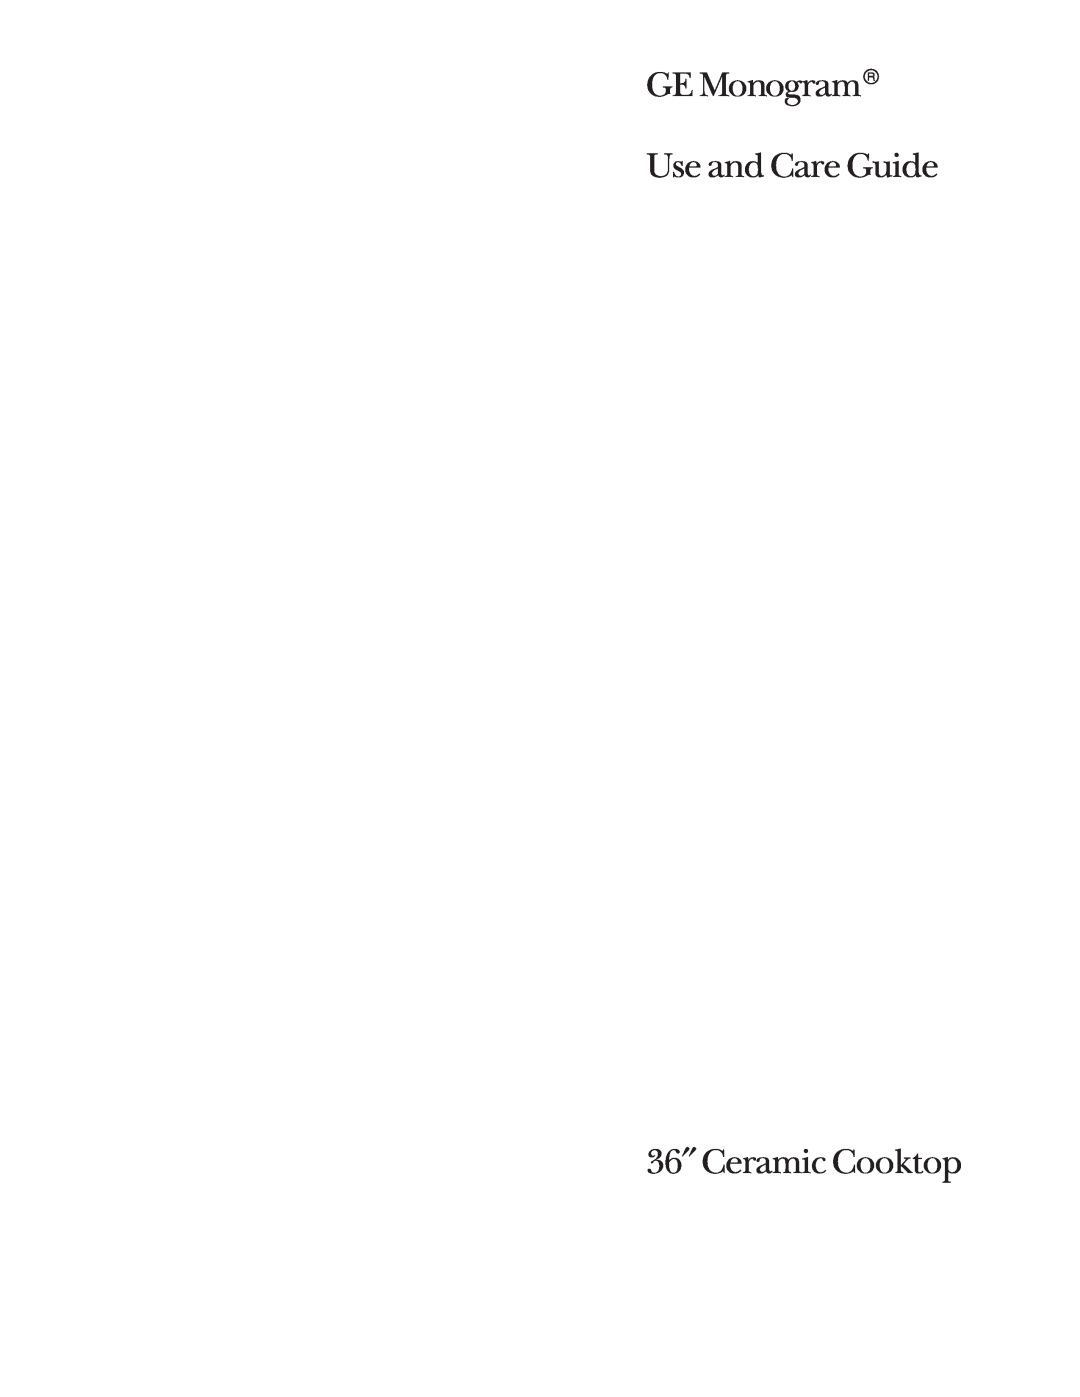 GE Monogram 36 Ceramic Cooktop manual GE Monogram Use and Care Guide, 36″ Ceramic Cooktop 